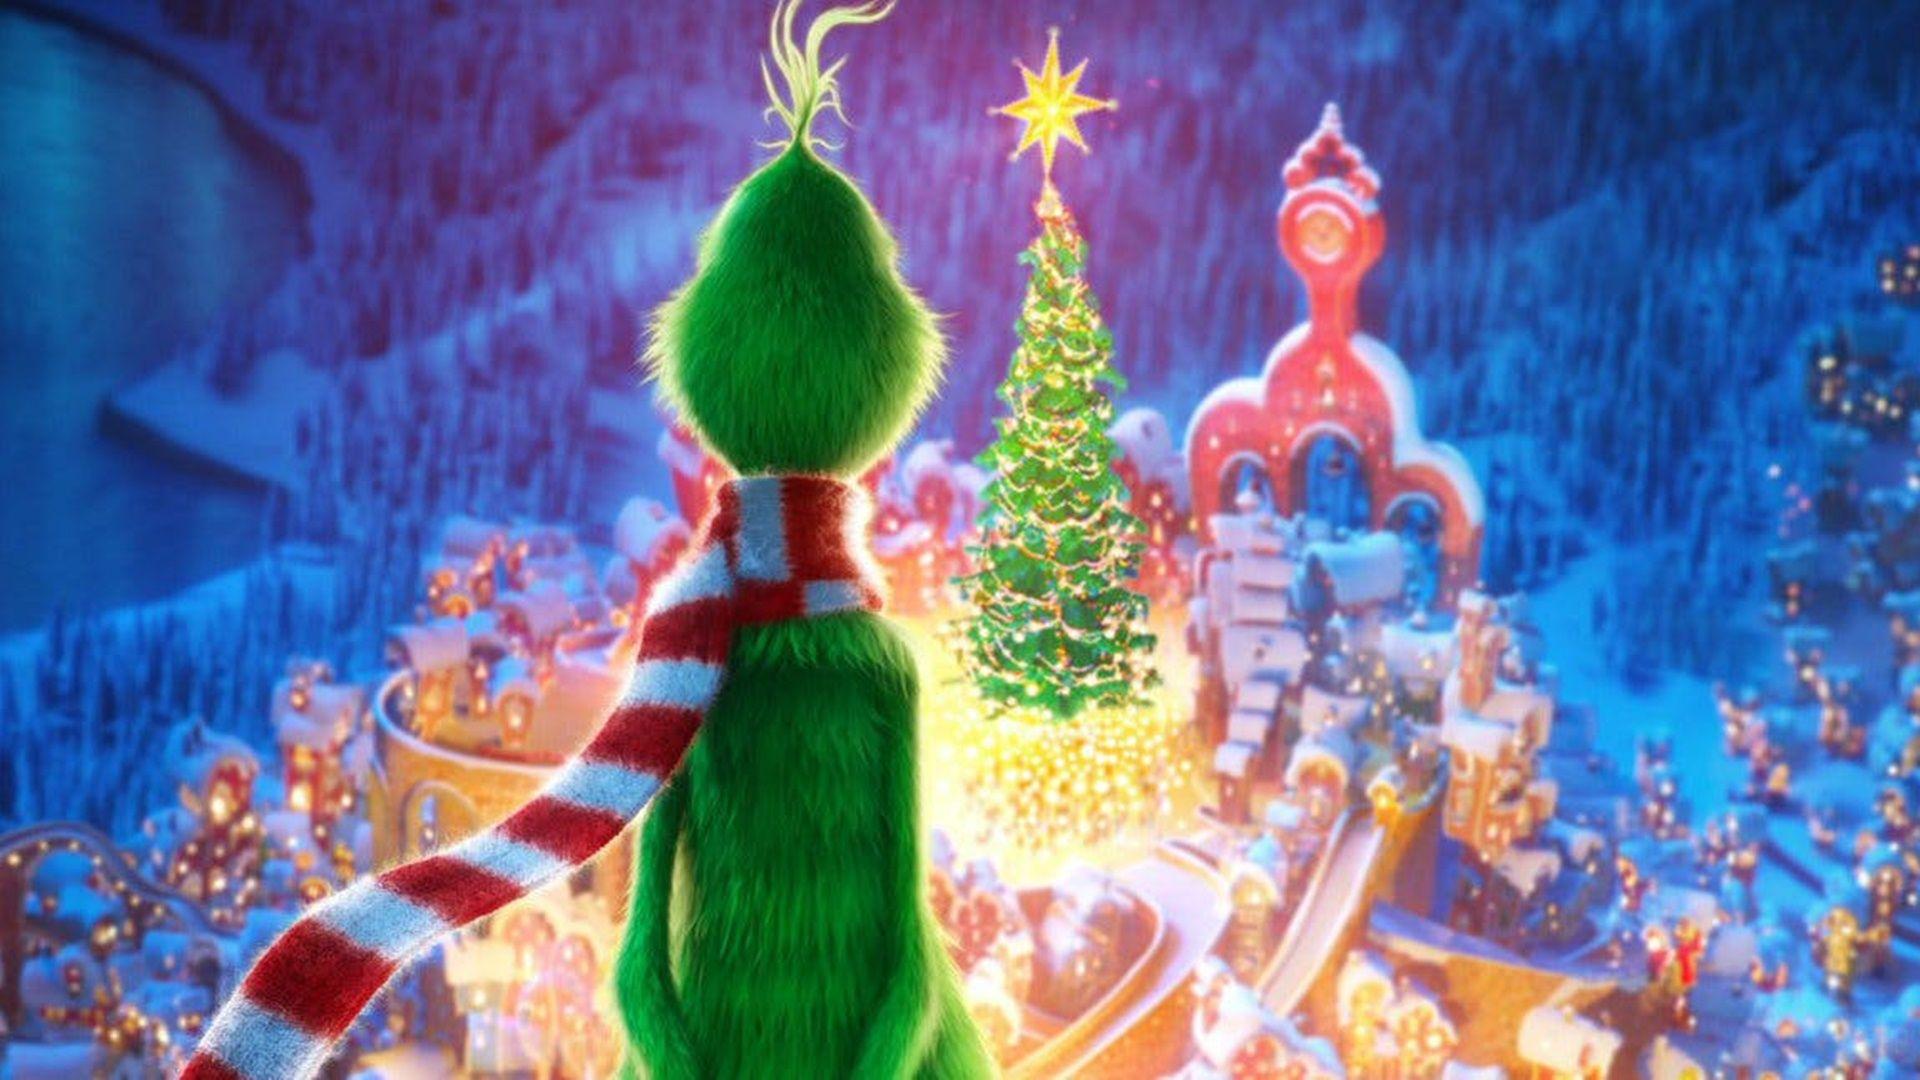 Đừng bỏ lỡ mẫu hình nền phim Grinch với những hình ảnh đầy phù thủy và gia đình. Hãy tận hưởng cảm giác Giáng sinh như không bao giờ trước đây!